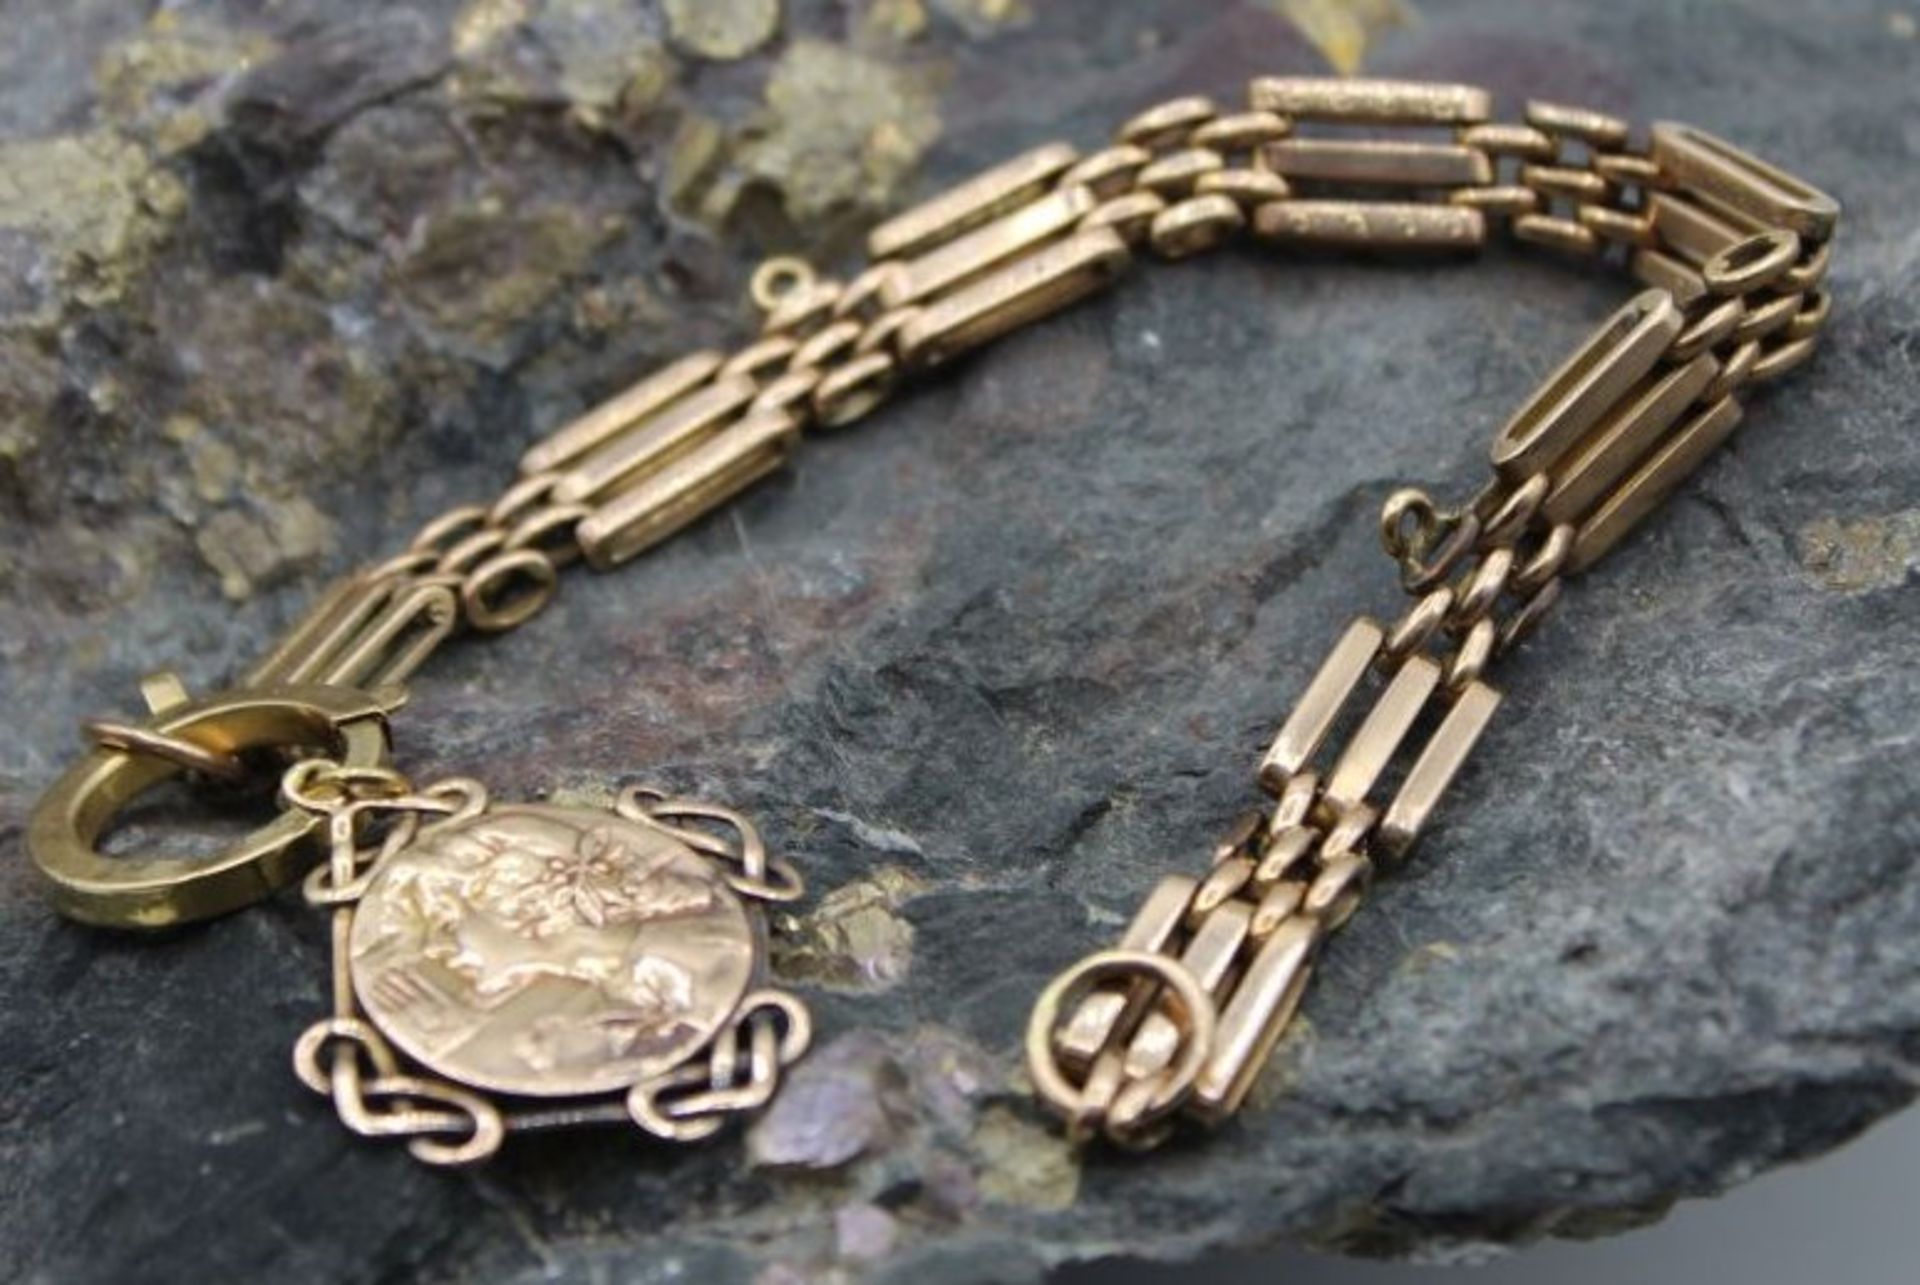 Double -Uhrenkette mit Anhänger dieser Gold um 14ct (gepr) ca. 3,3gr, ca. L-25cm. - Bild 2 aus 3